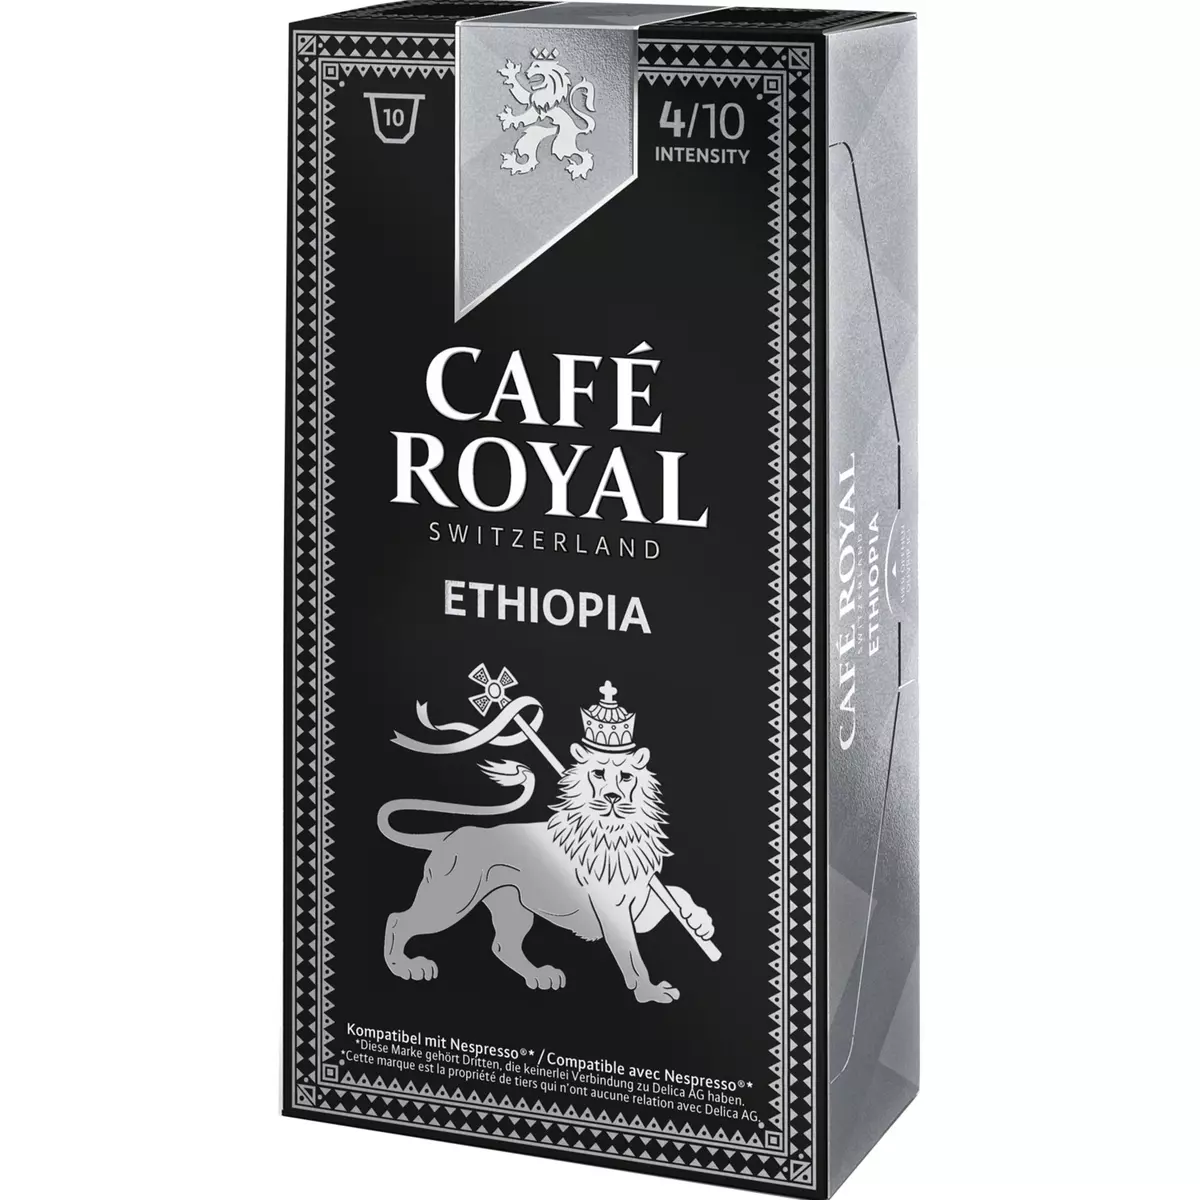 CAFE ROYAL Café Royal single origin ethiopia nespresso capsule x10 -50g